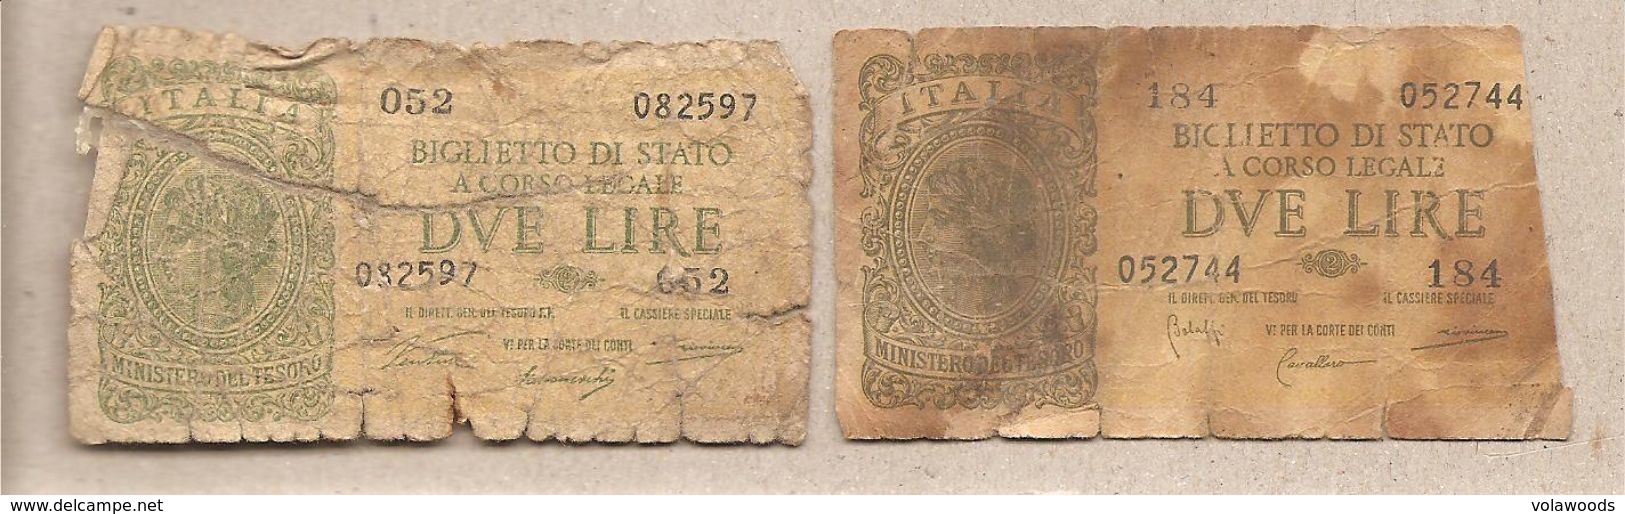 Italia - Banconote Circolate Da 2 Lire "Italia Laureata" - 1944 Serie Completa Dei Due Decreti Emessi - Sammlungen